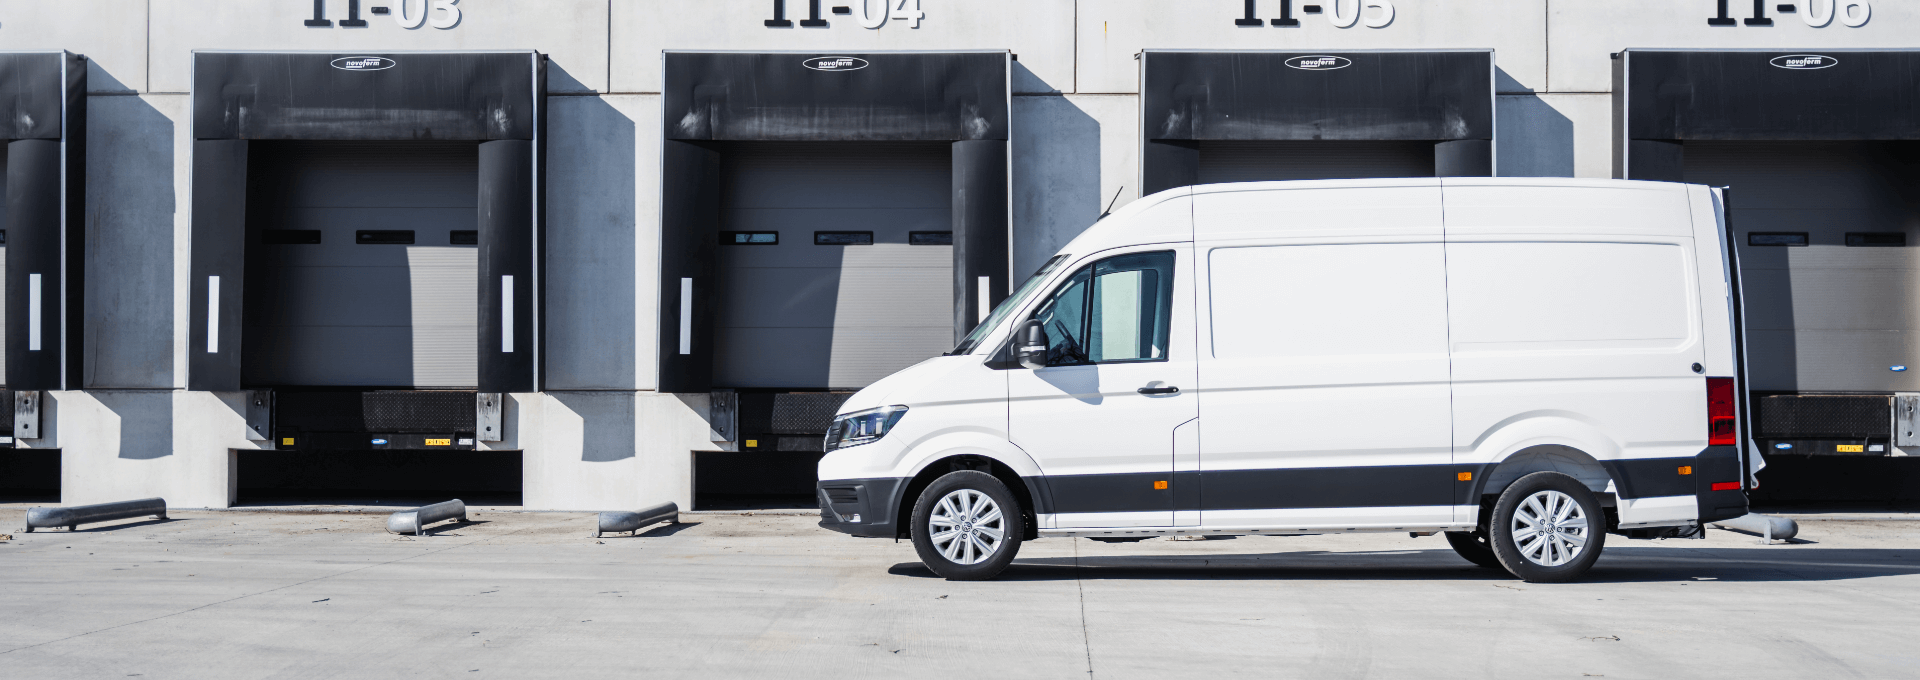 Betrouwbare bedrijfswagens met professionele uitstraling voor zakelijk gebruik in Roosendaal